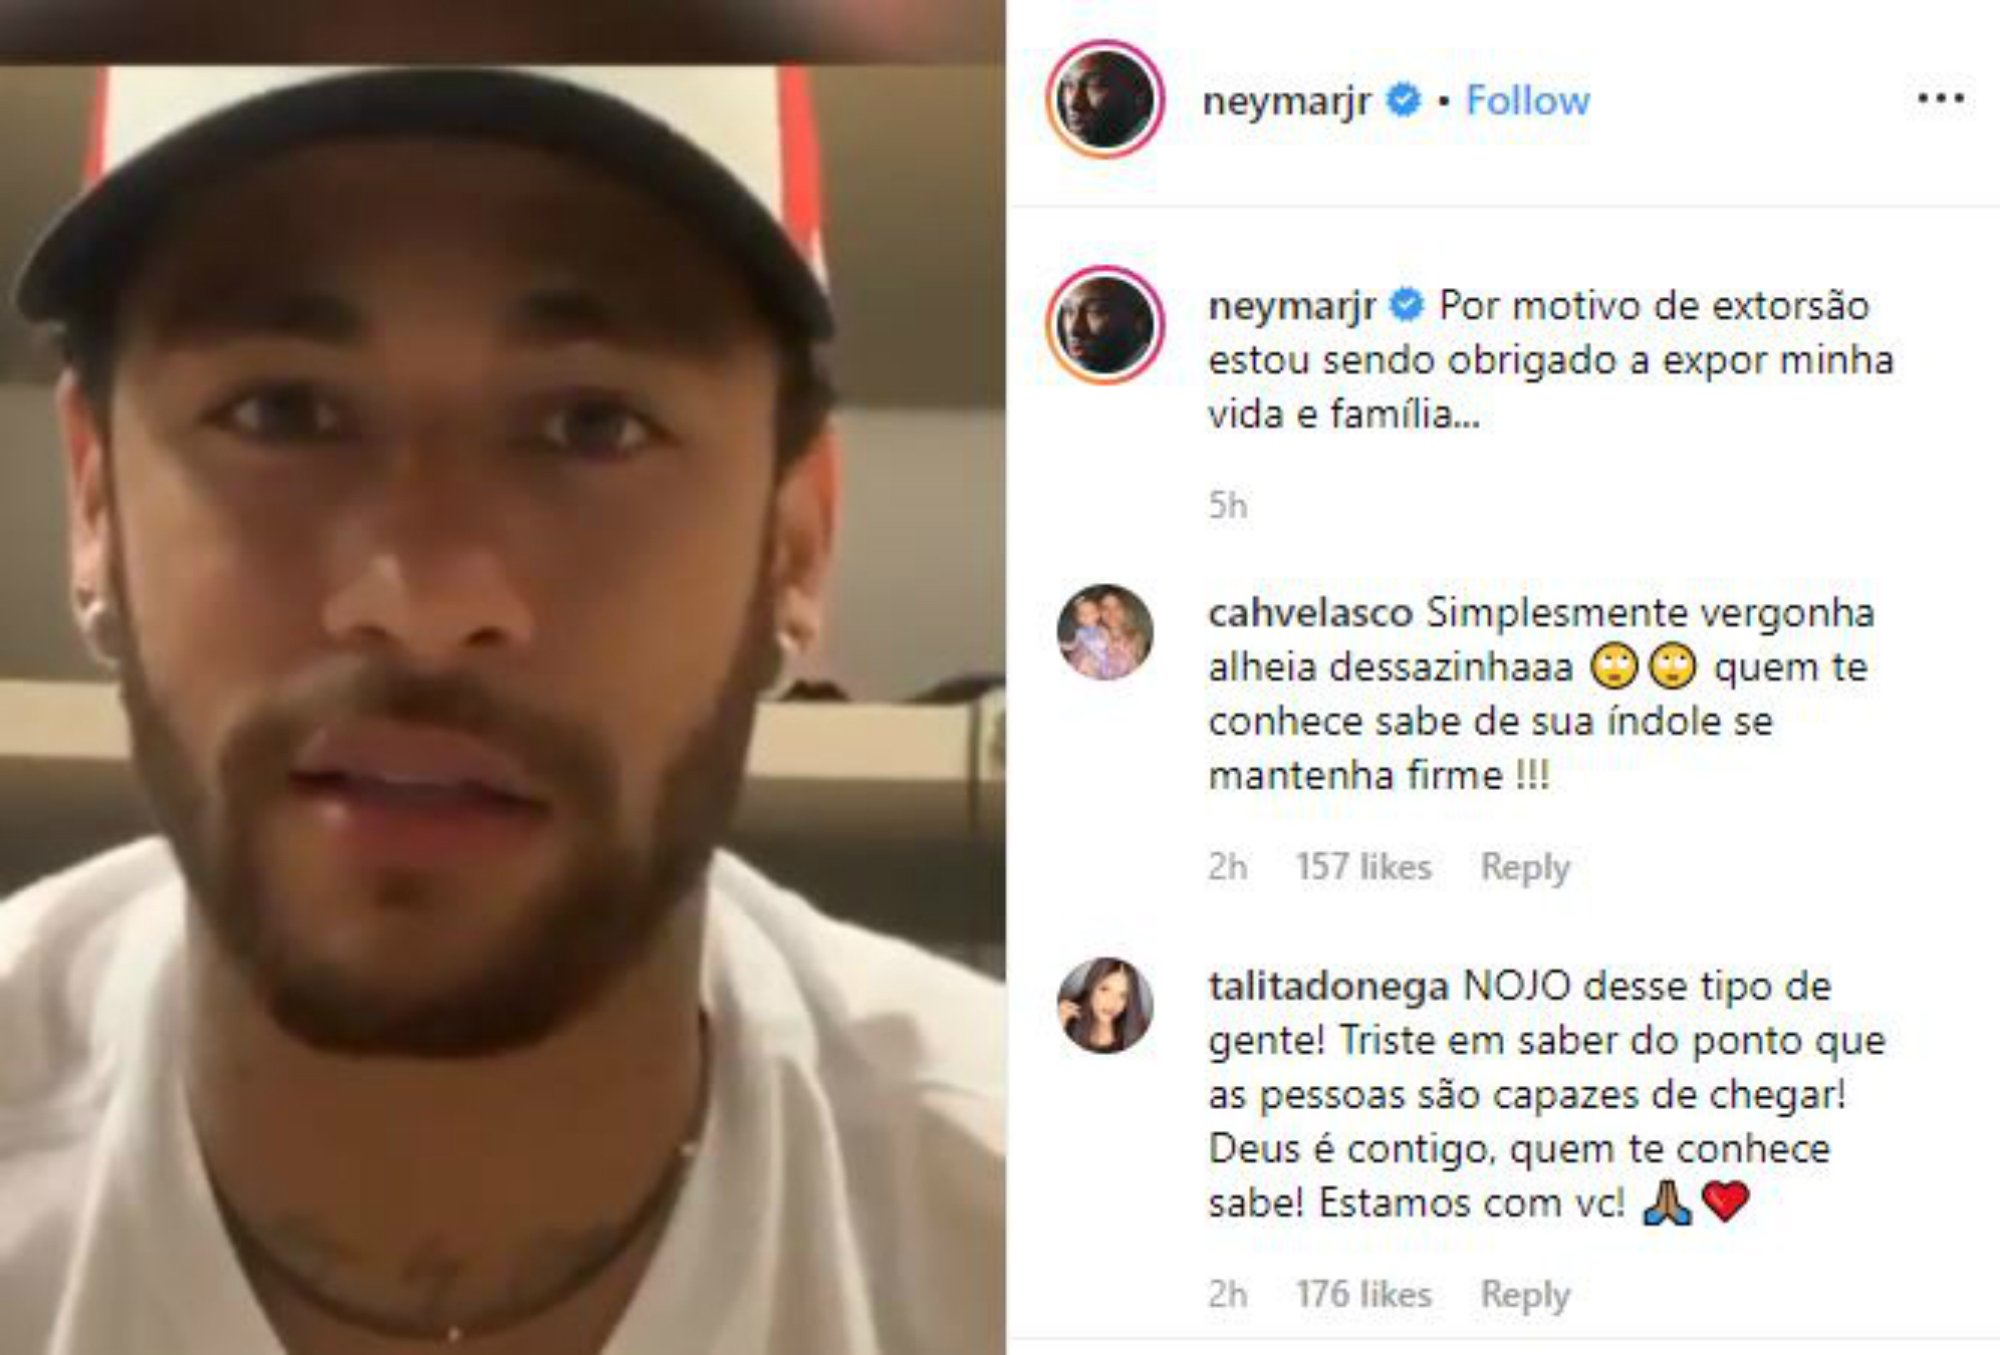 Neymar es defensa i publica fotos íntimes i missatges de la dona que l'acusa de violació